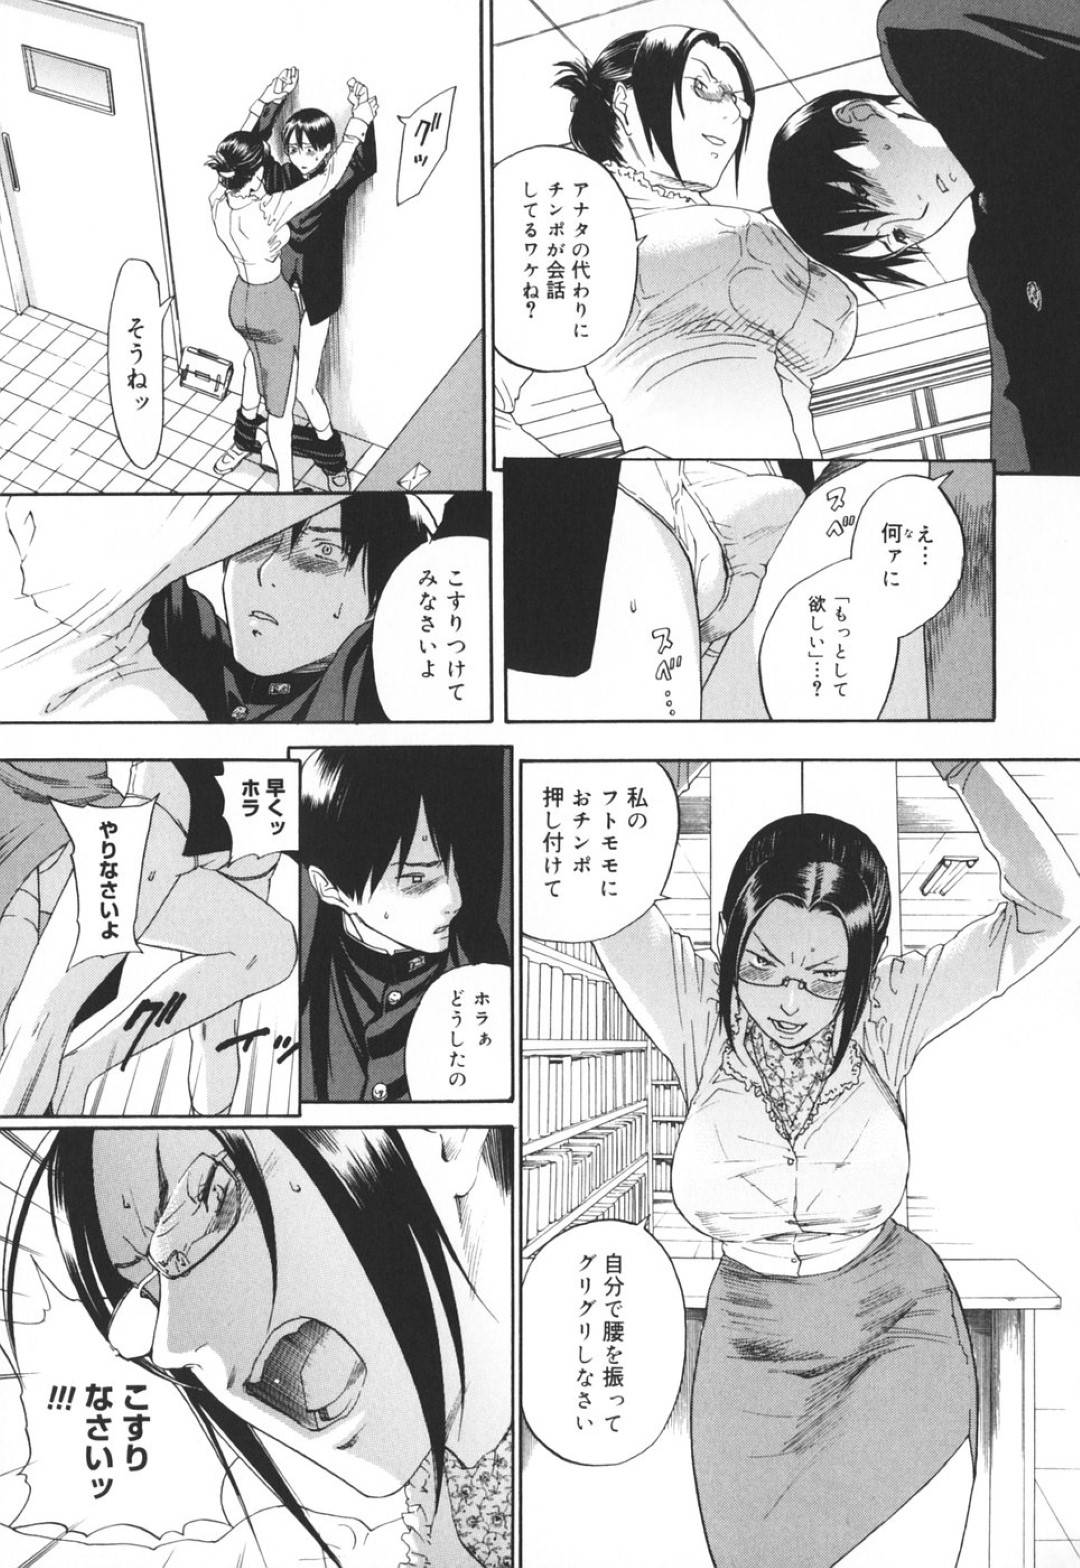 【エロ漫画】黒髪淫乱女教師は、童貞生徒をフェラしておちょくっていたが、押し倒されてしまう…【米倉けんご】